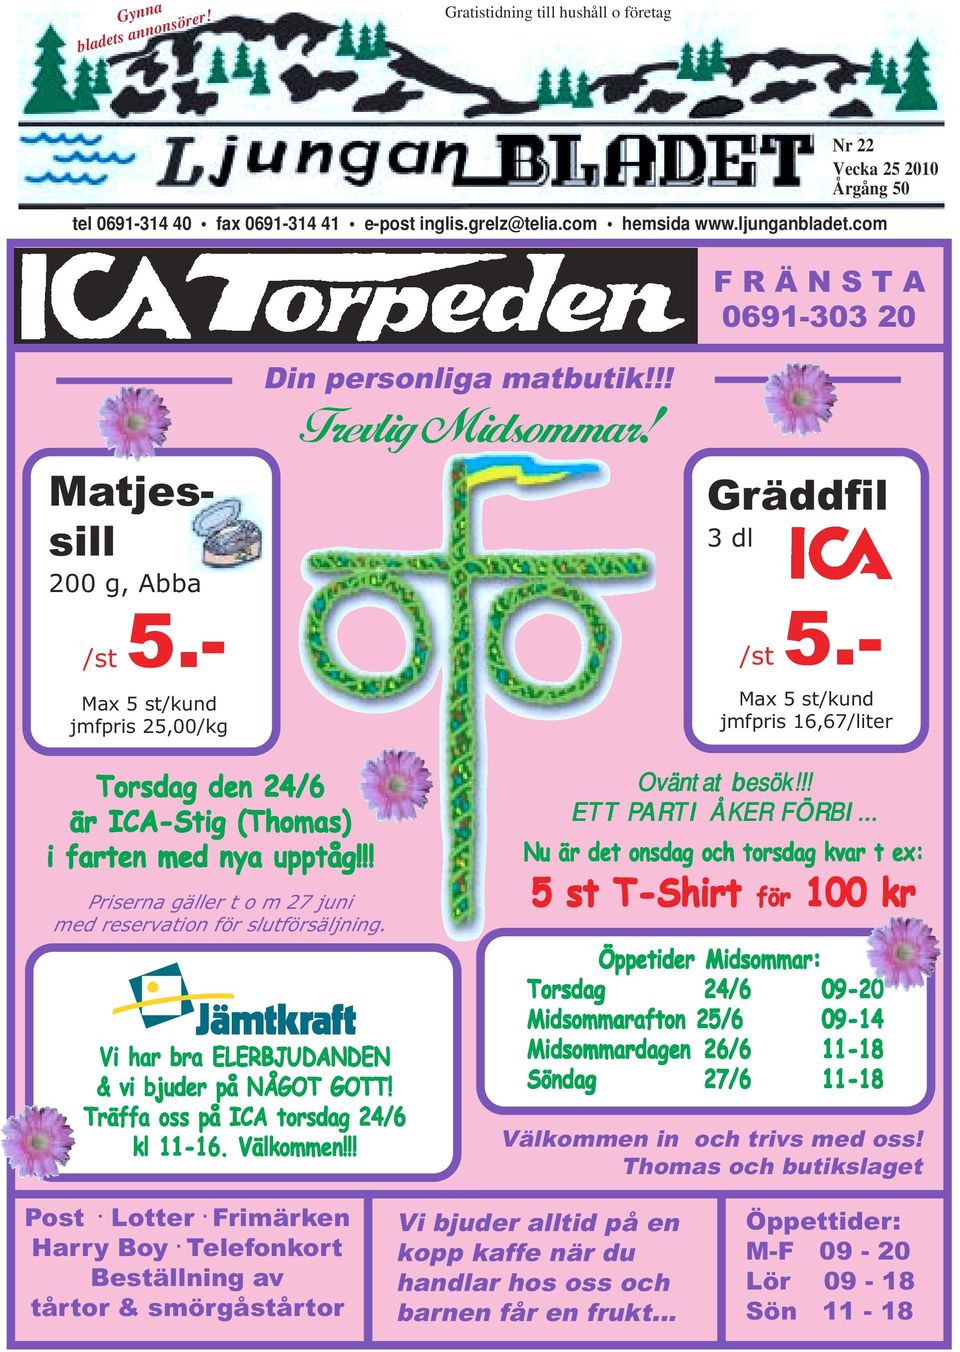 - Max 5 st/kund jmfpris 16,67/liter Torsdag den 24/6 är ICA-Stig (Thomas) i farten med nya upptåg!!! Priserna gäller t o m 27 juni med reservation för slutförsäljning.